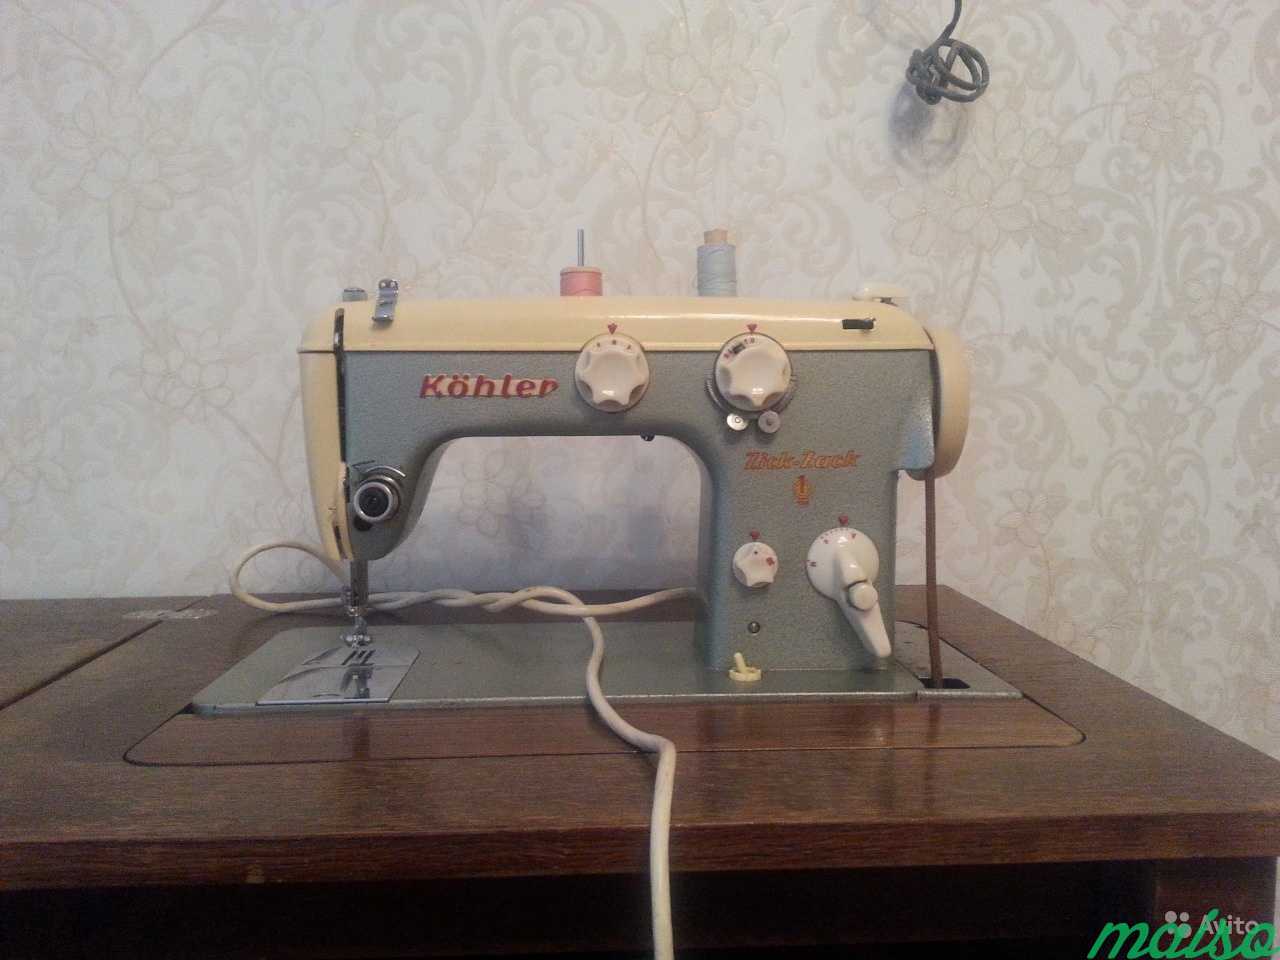 Ножная швейная машинка Kohler zick-zack в Москве. Фото 1